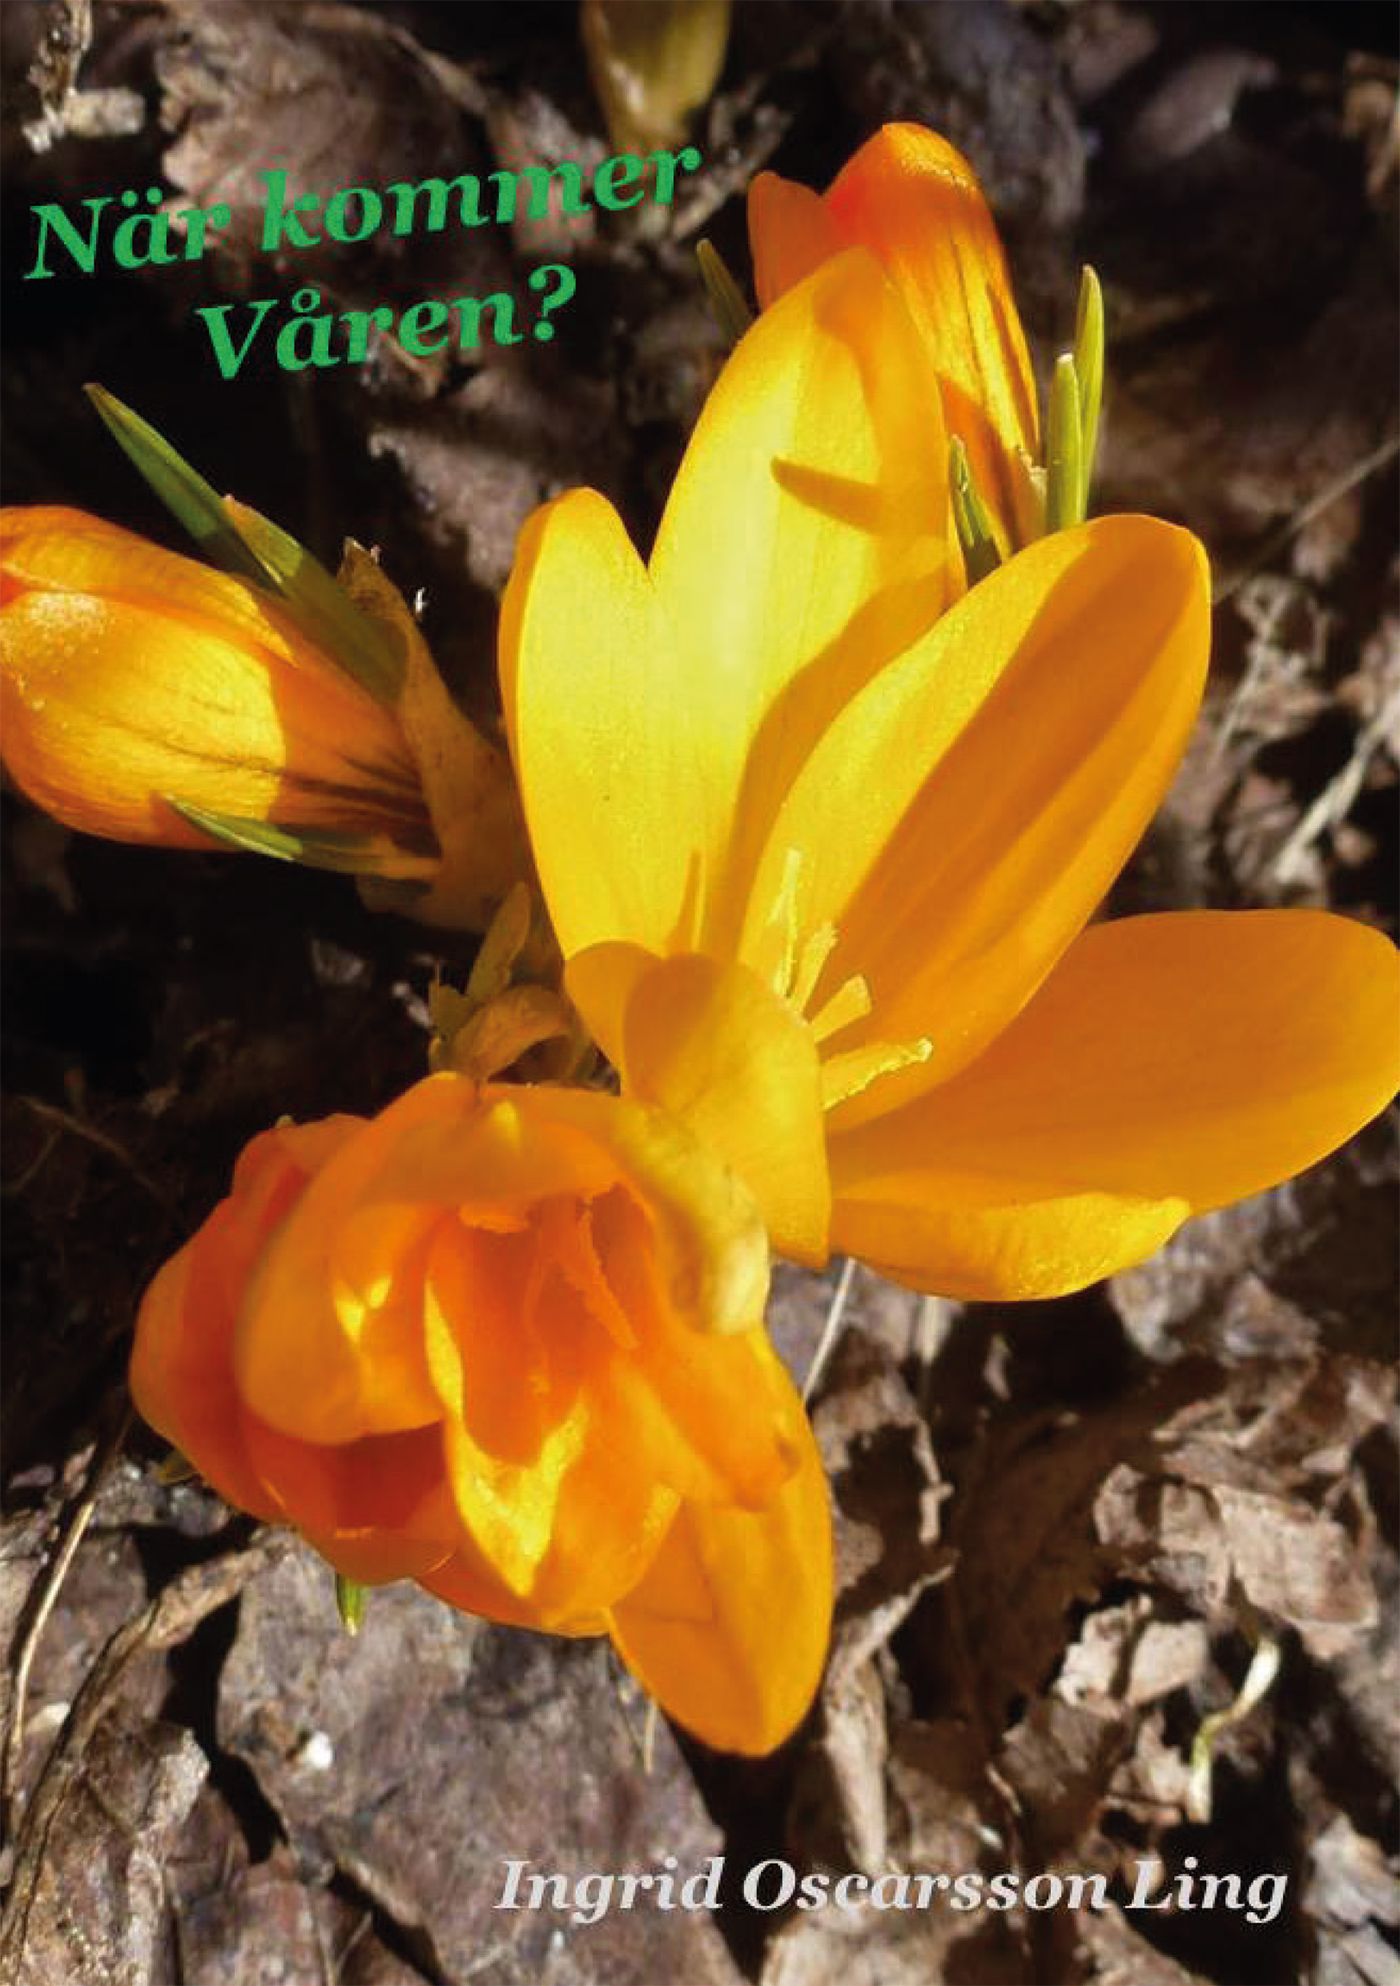 När kommer våren?, e-bog af Ingrid Oscarsson Ling